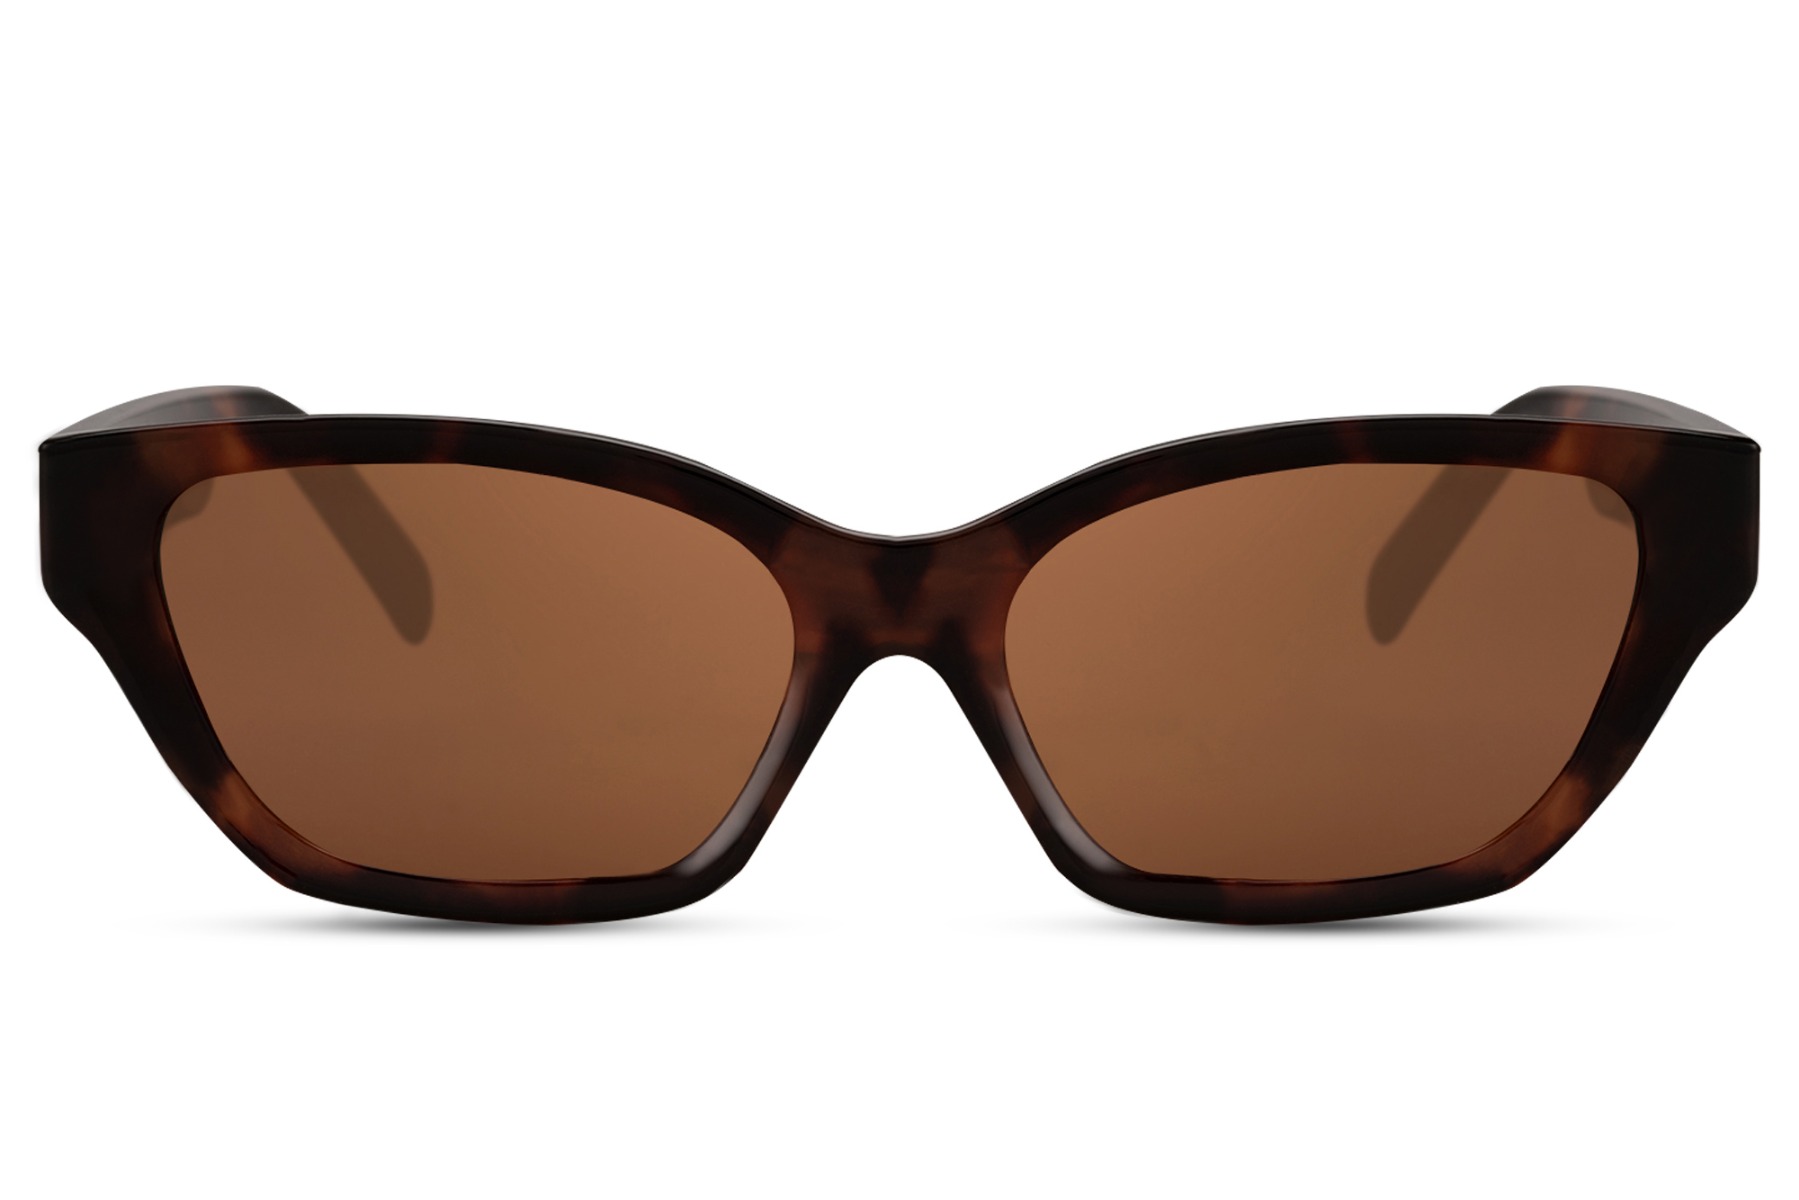 Buy Sunglasses for Women Online - Butterfly, Full Rim, Brown Eyeframe for  Stylish Look - NV1912 | Nova Eyewear